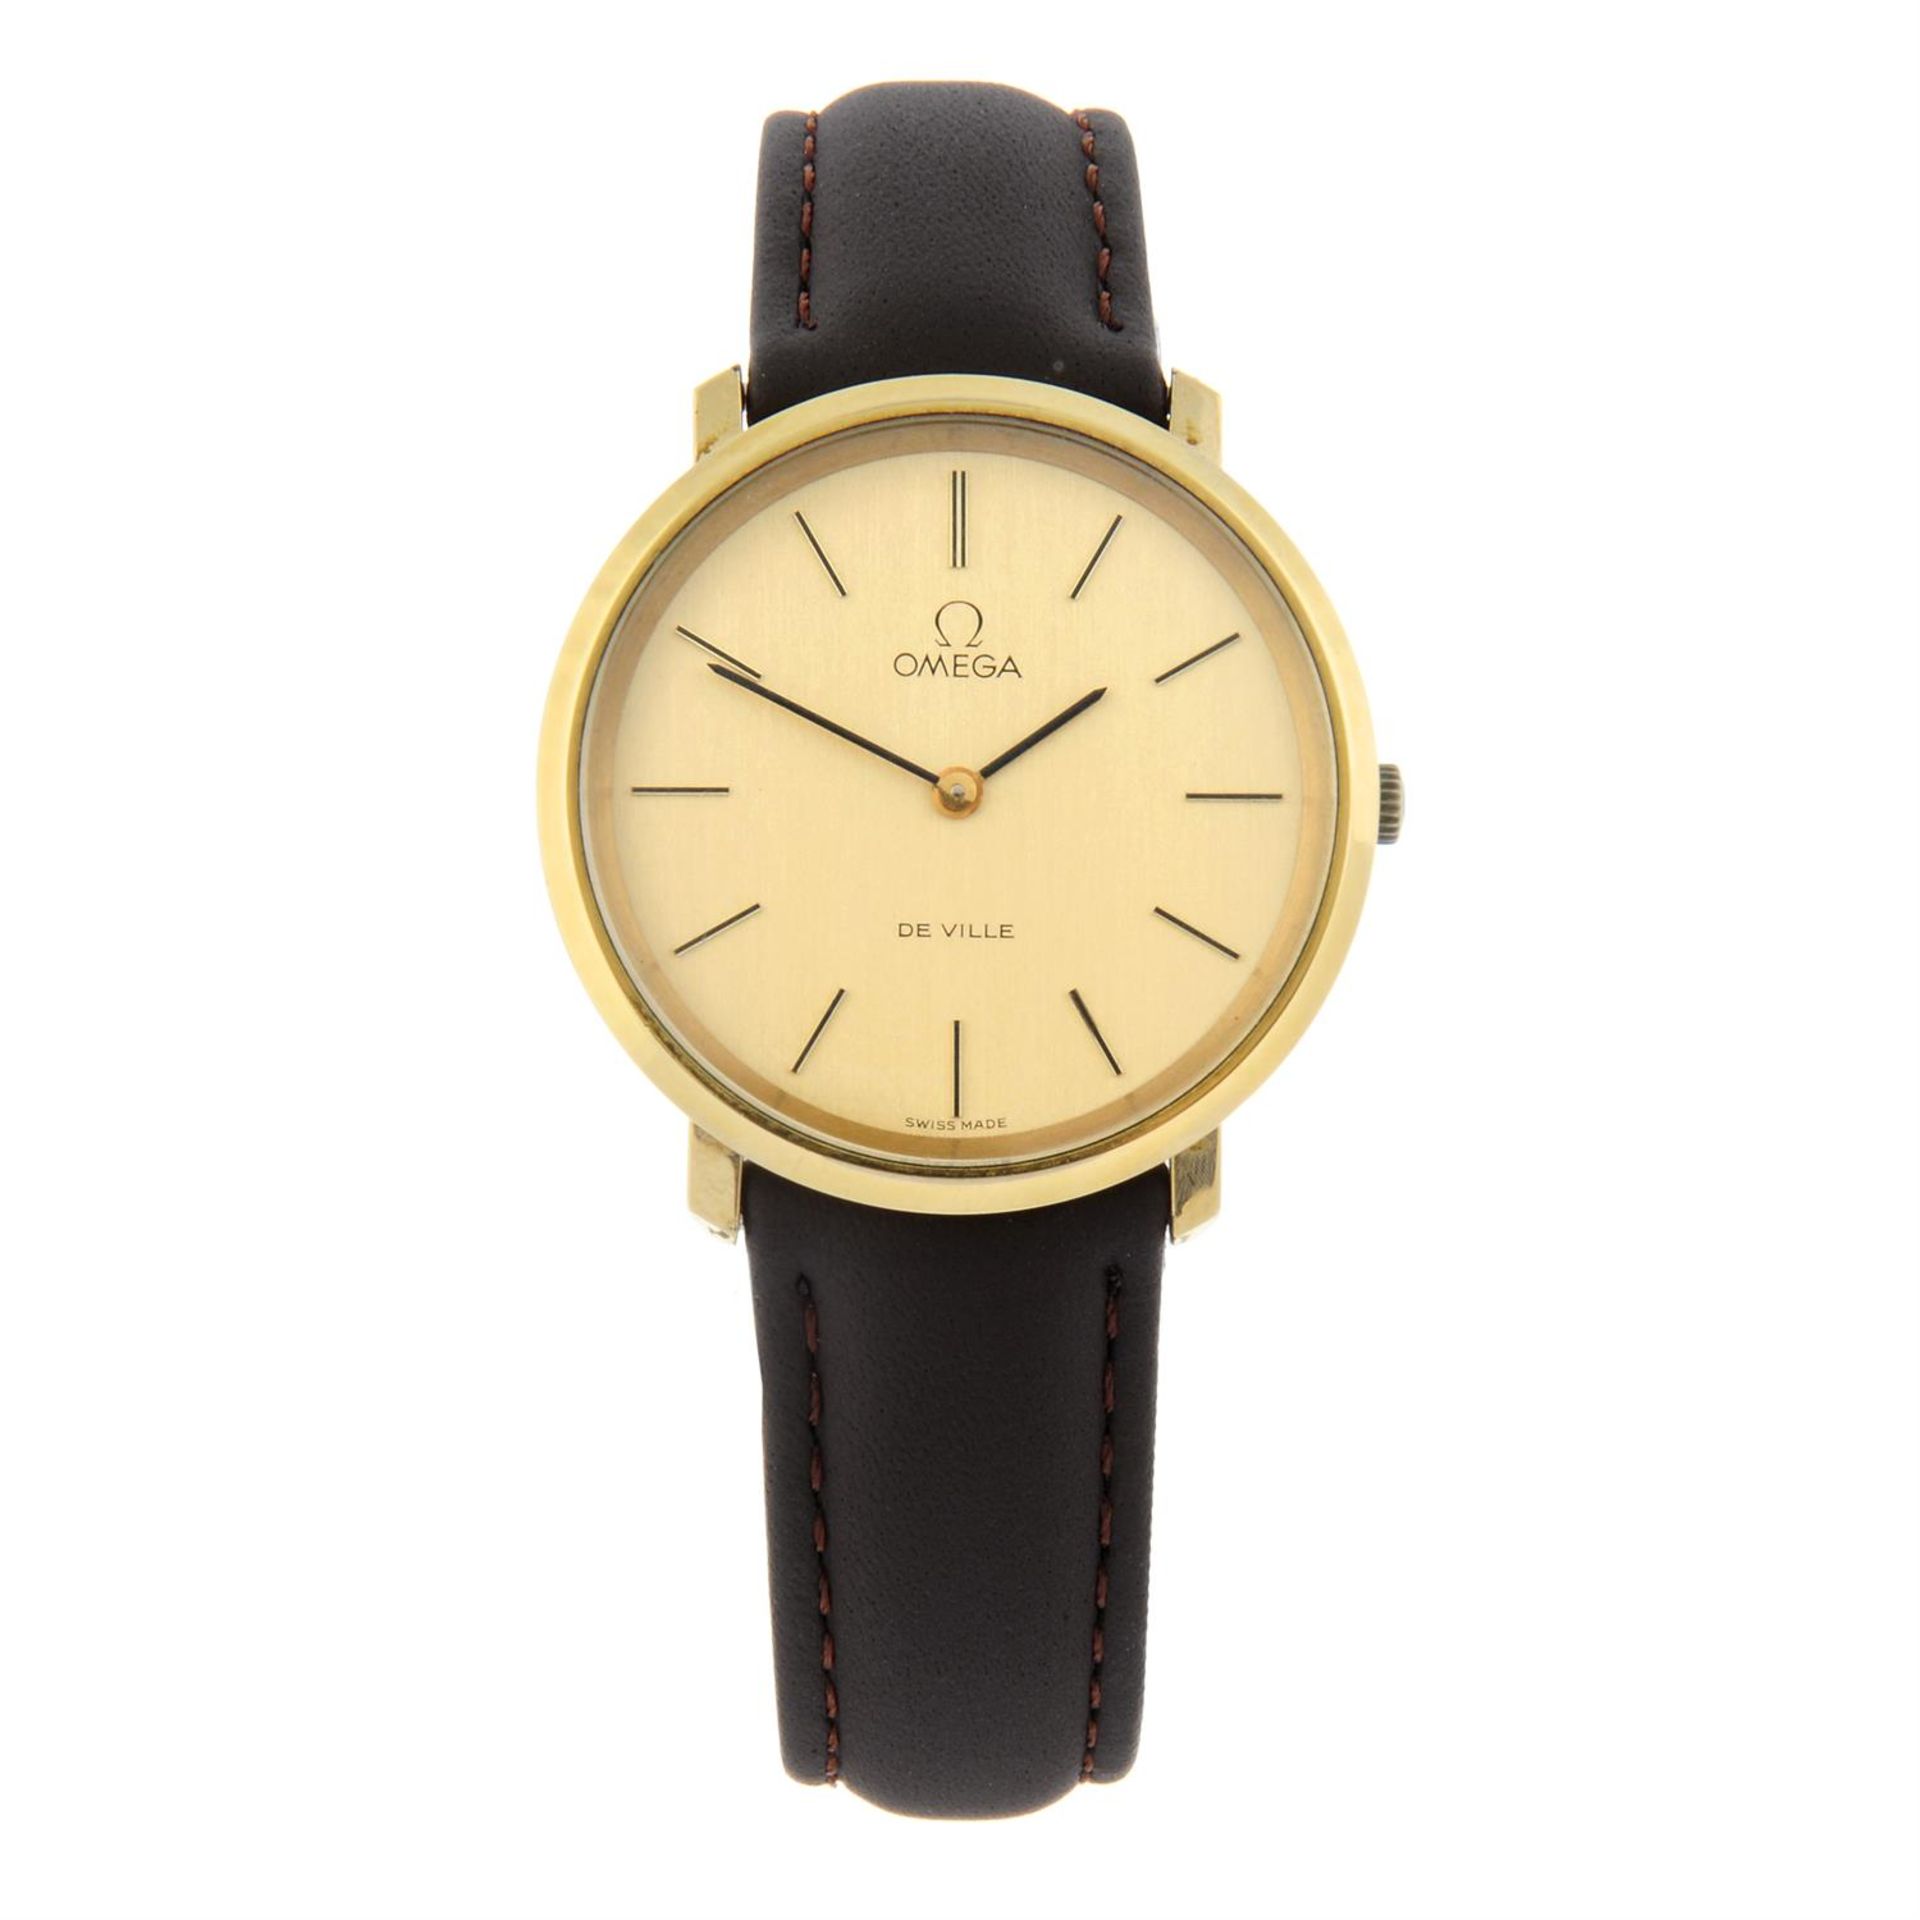 OMEGA - a gold plated De Ville wrist watch, 33mm.